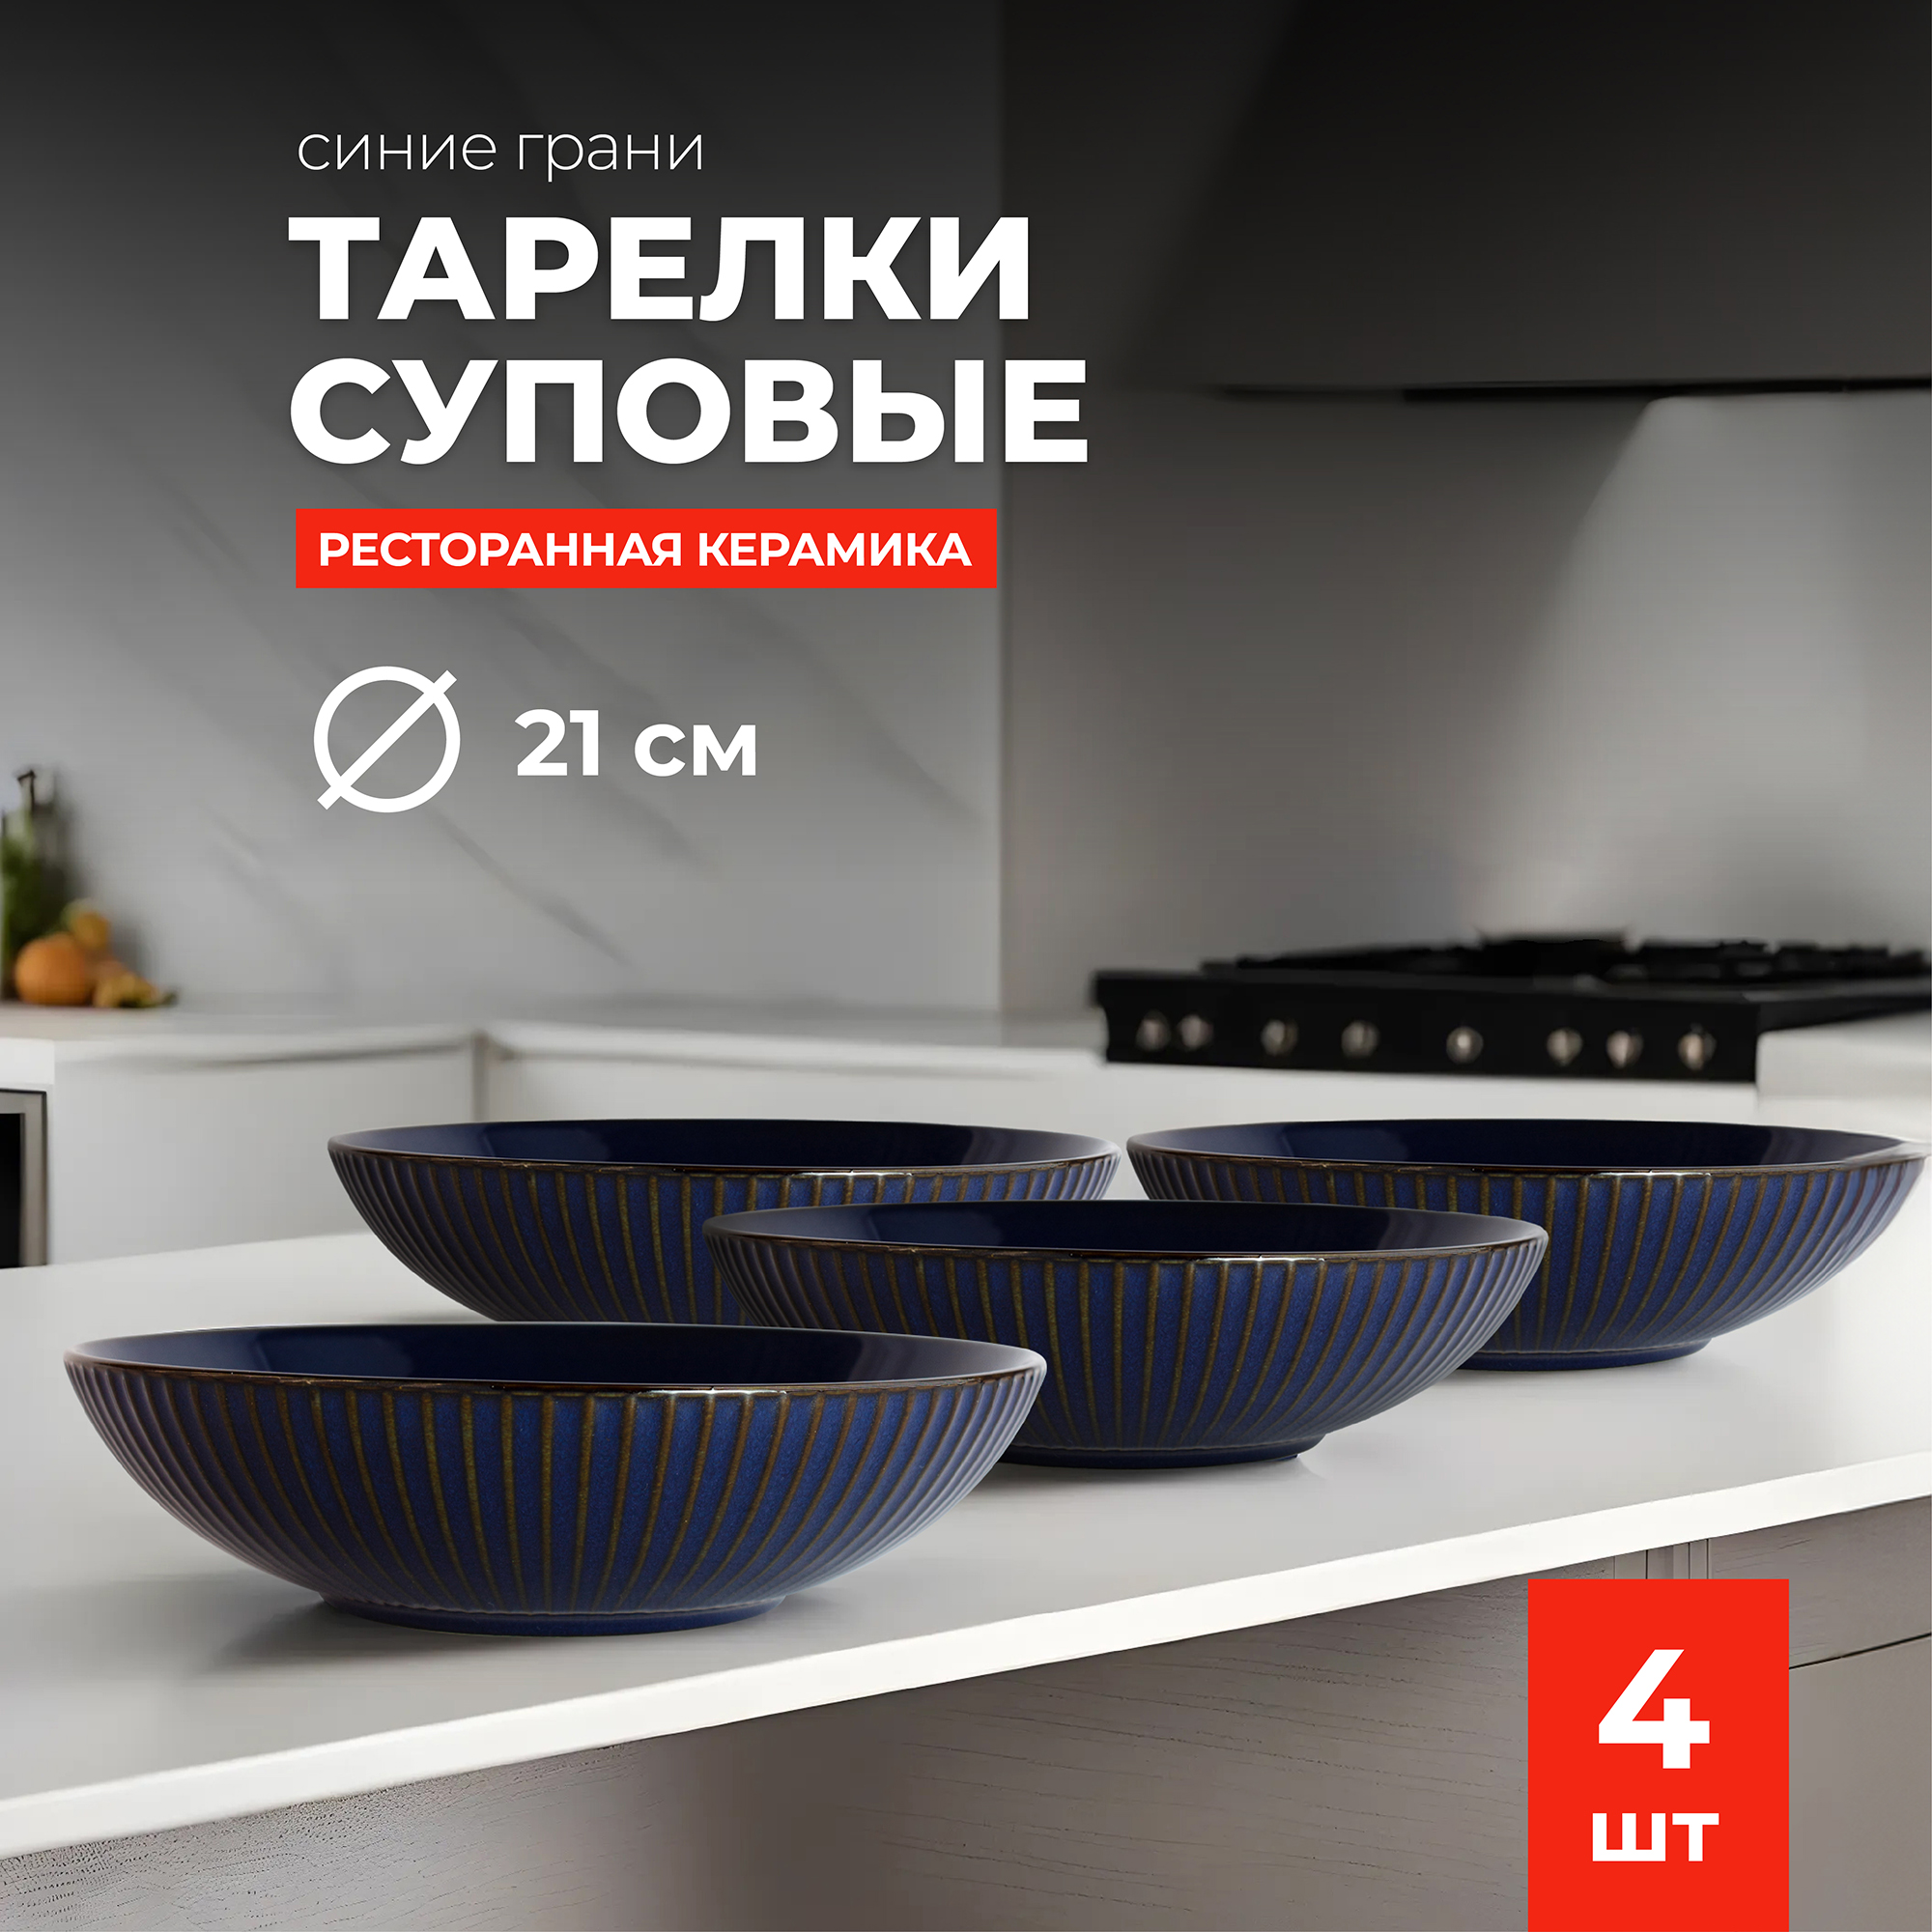 Набор тарелок Doma суповые керамические Синие грани 21 см 4 шт